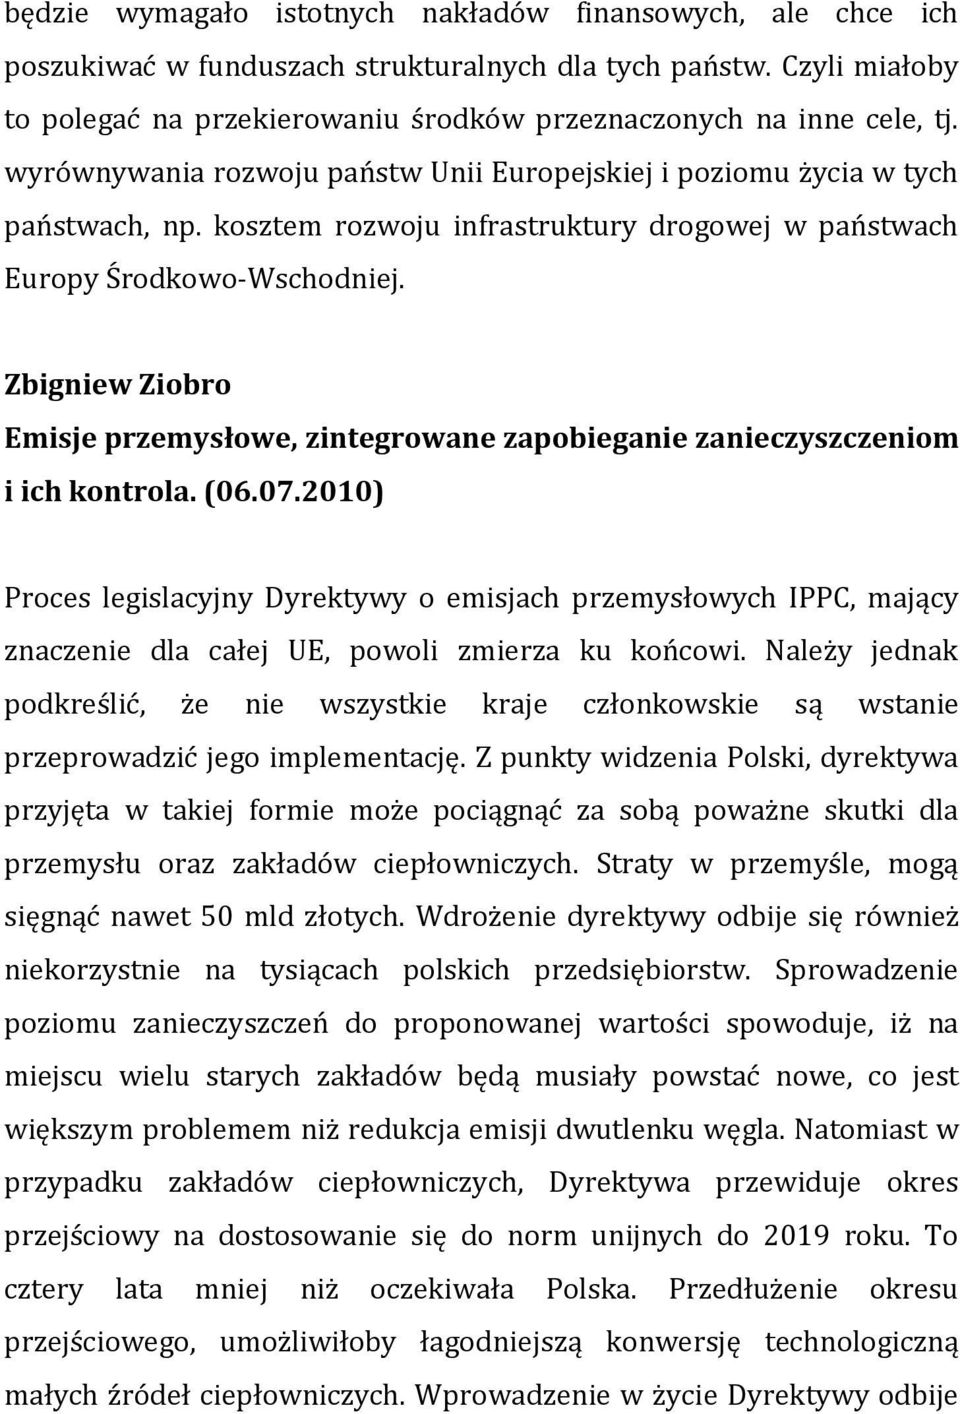 Zbigniew Ziobro Emisje przemysłowe, zintegrowane zapobieganie zanieczyszczeniom i ich kontrola. (06.07.